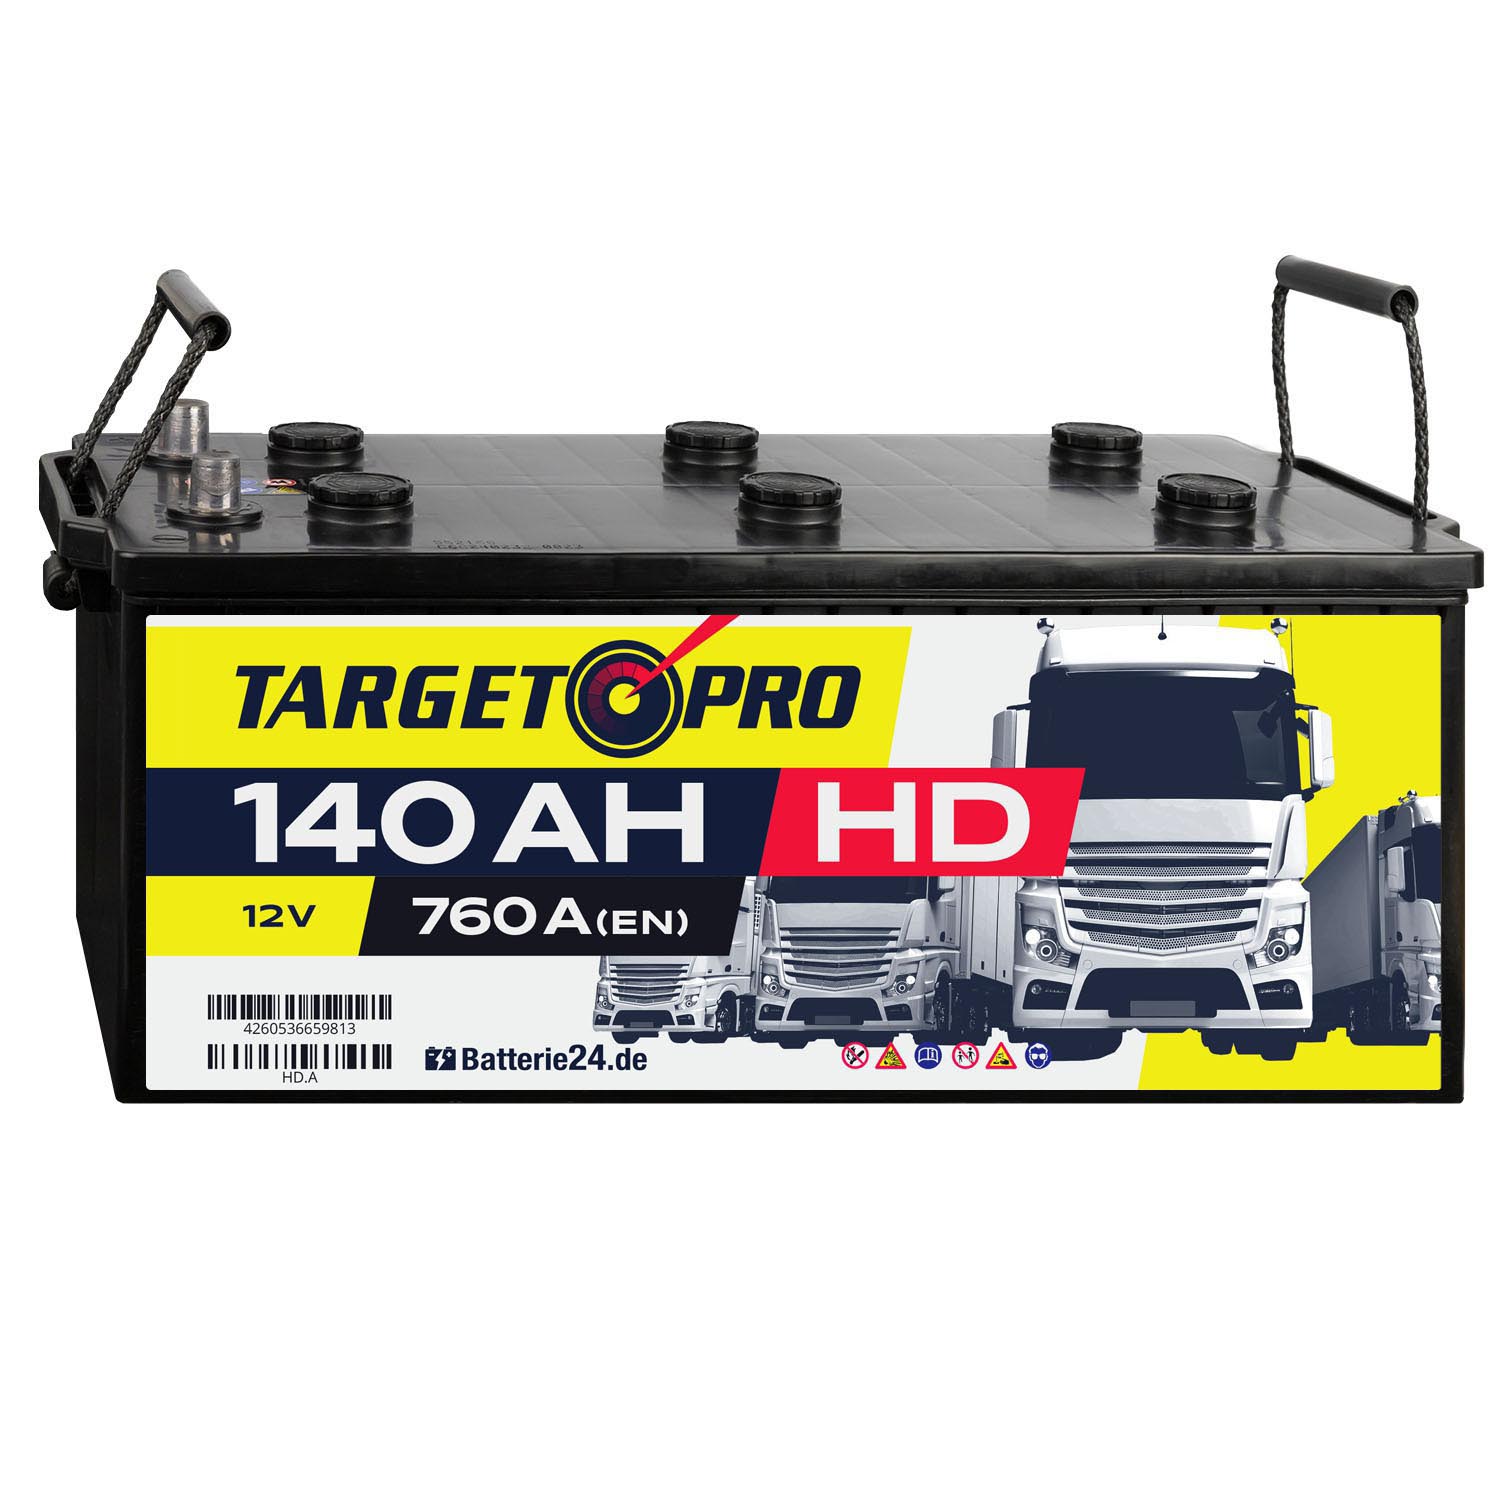 Target Pro HD 12V 140Ah LKW Batterie